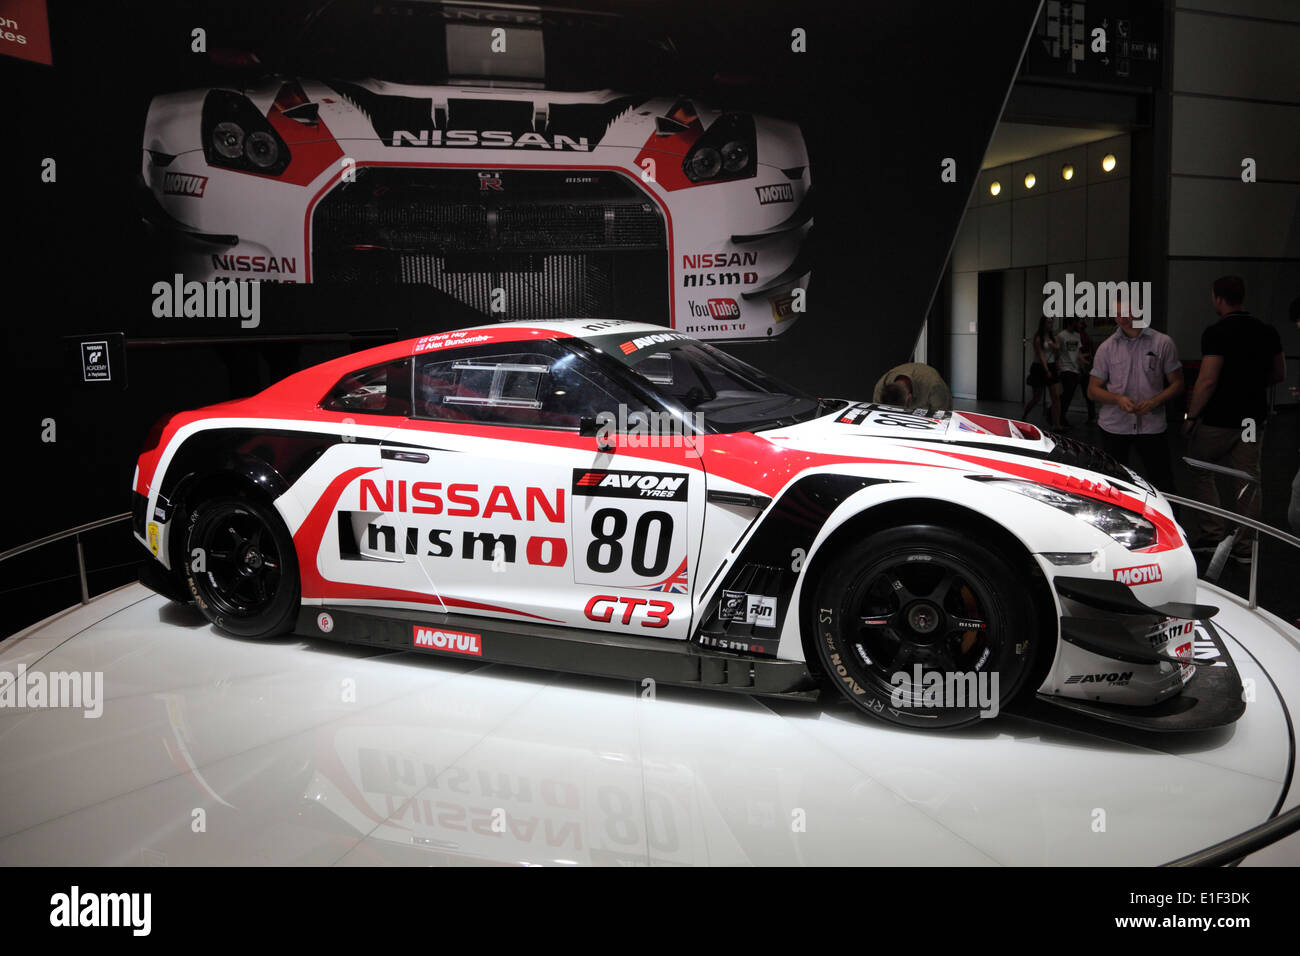 Nissan Nismo GT3 voiture de course à l'AMI - Salon International de l'Auto Mobile le 1er juin 2014 à Leipzig, Allemagne Banque D'Images